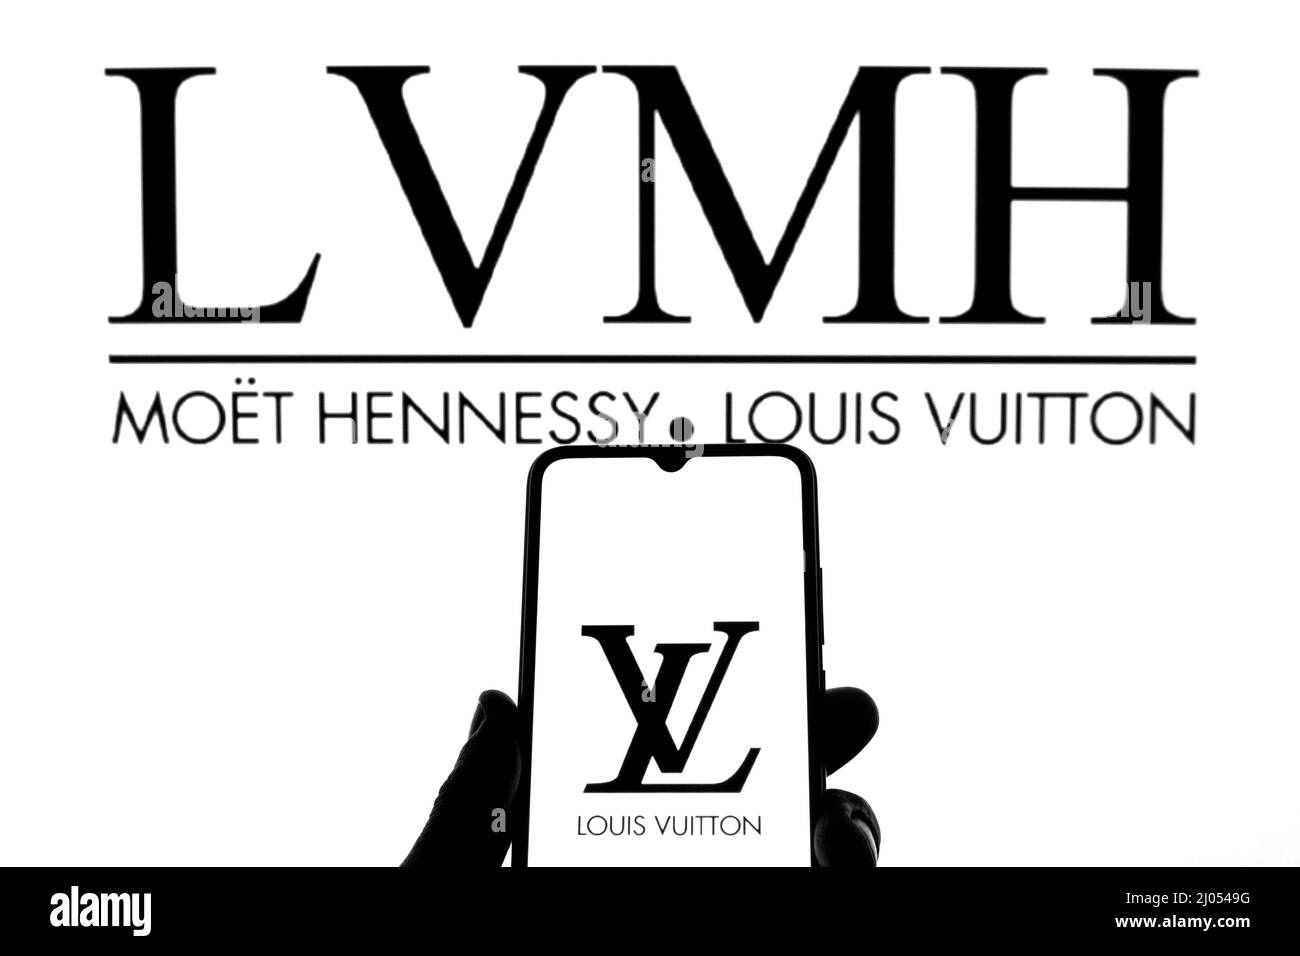 Lvmh logo Banque de photographies et d'images à haute résolution - Alamy